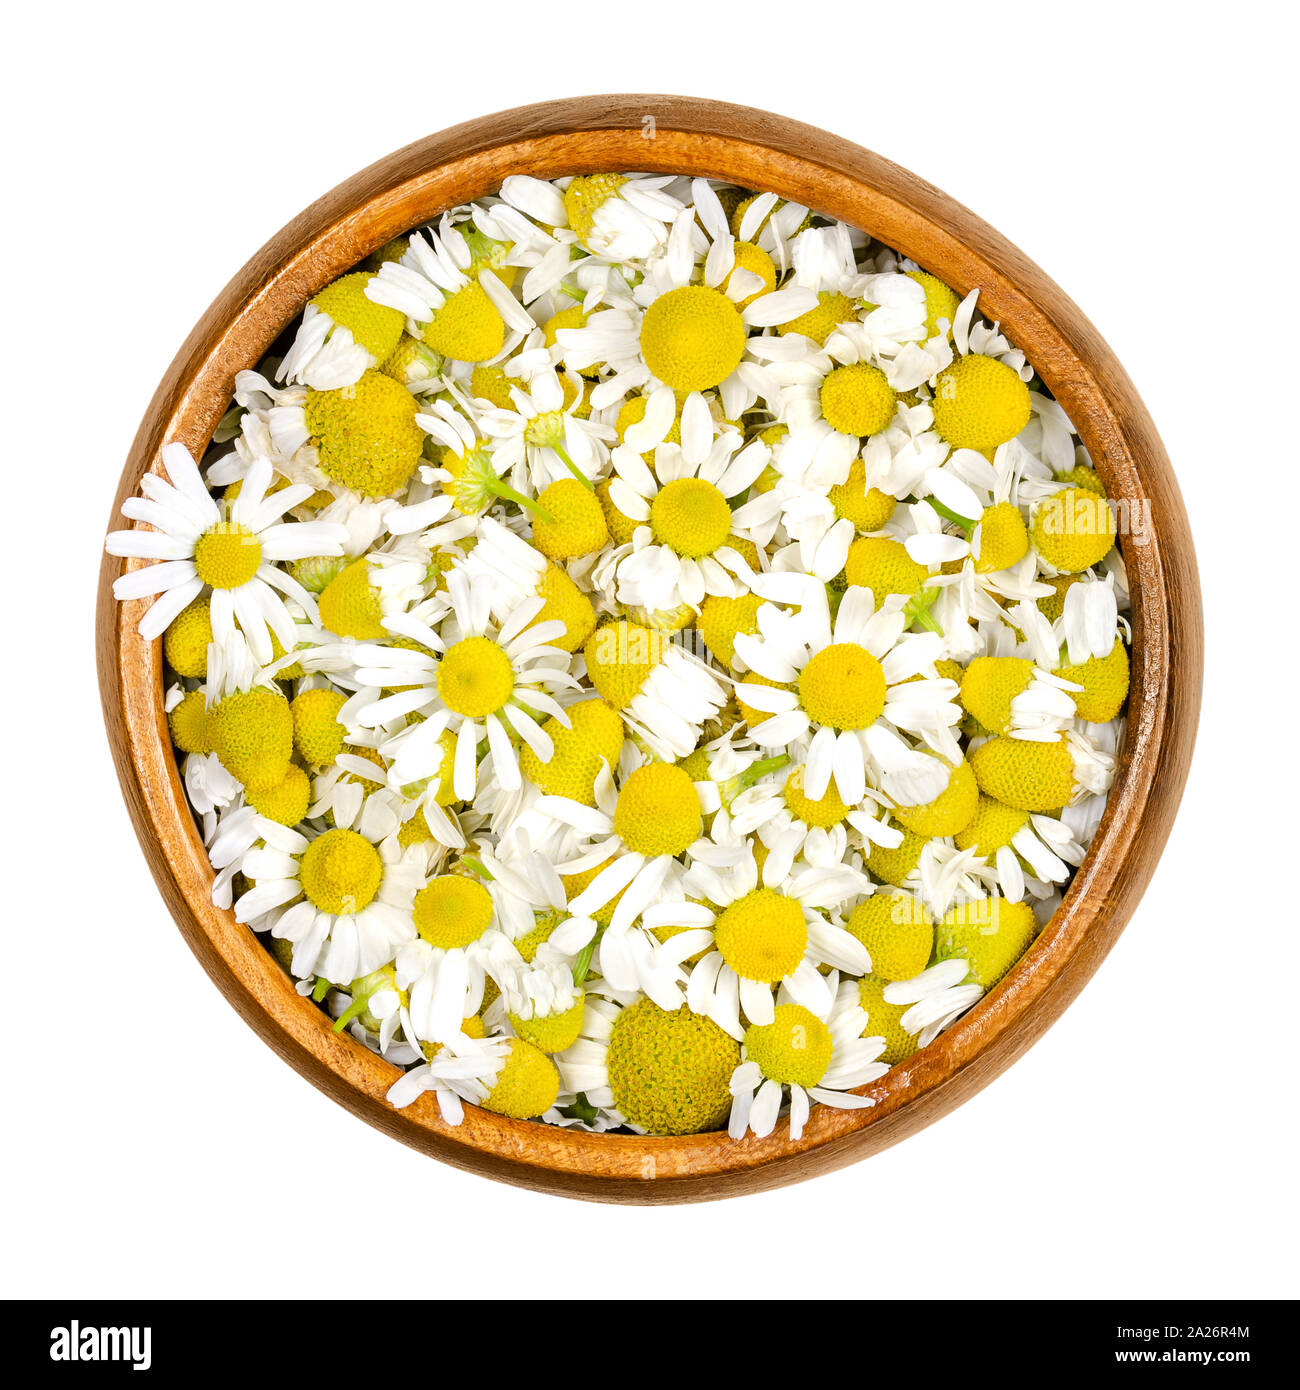 Kamille Blüten in Houten. Frische Blumen, Kamille Matricaria Chamomilla, für Kräutertees und in der traditionellen Medizin verwendet. Stockfoto